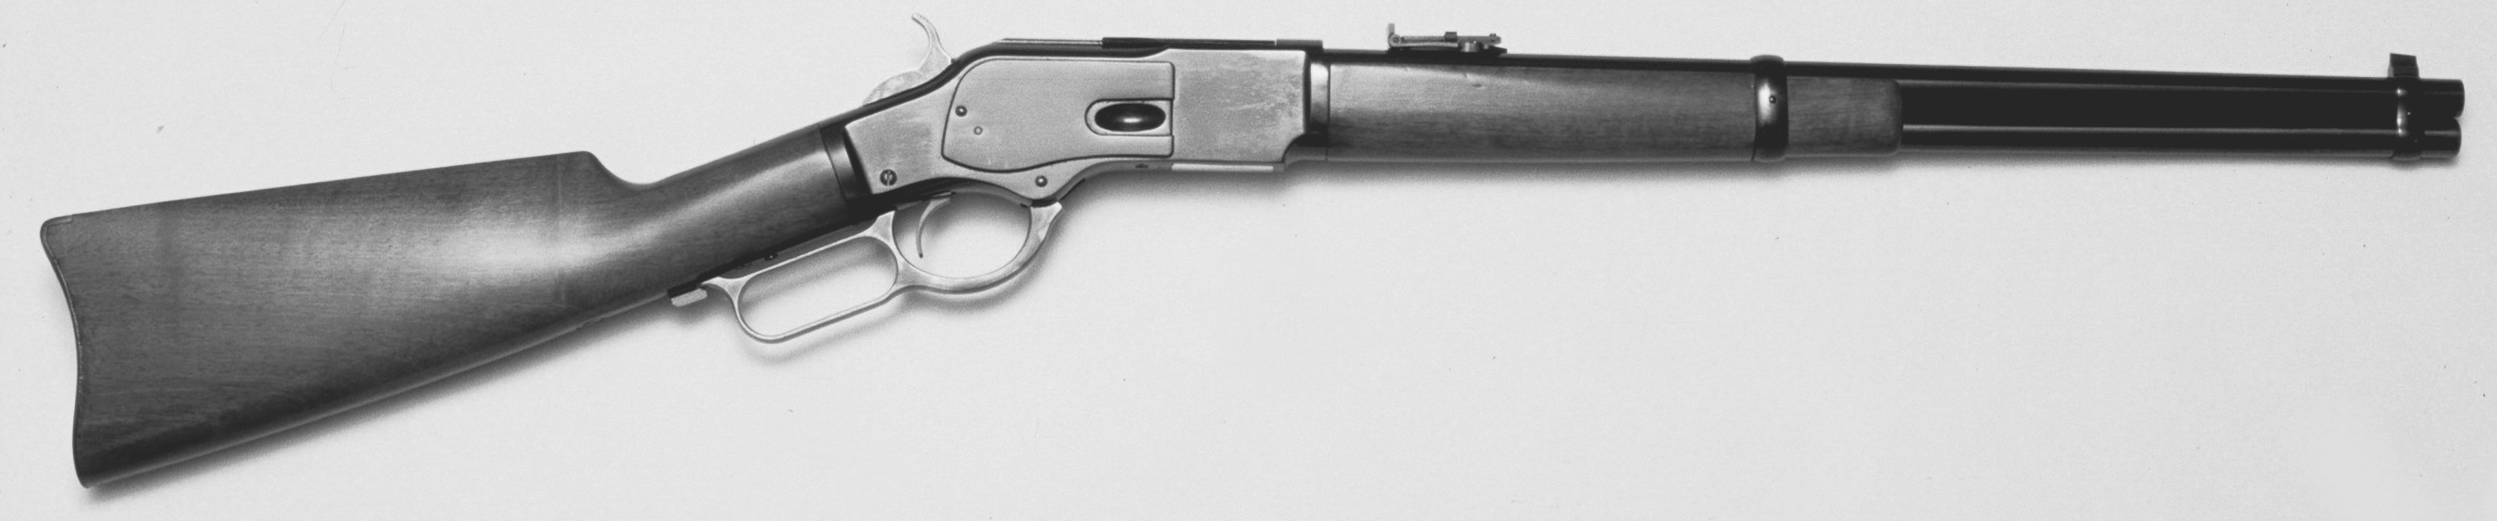 Winchester Model 1873 Carbine